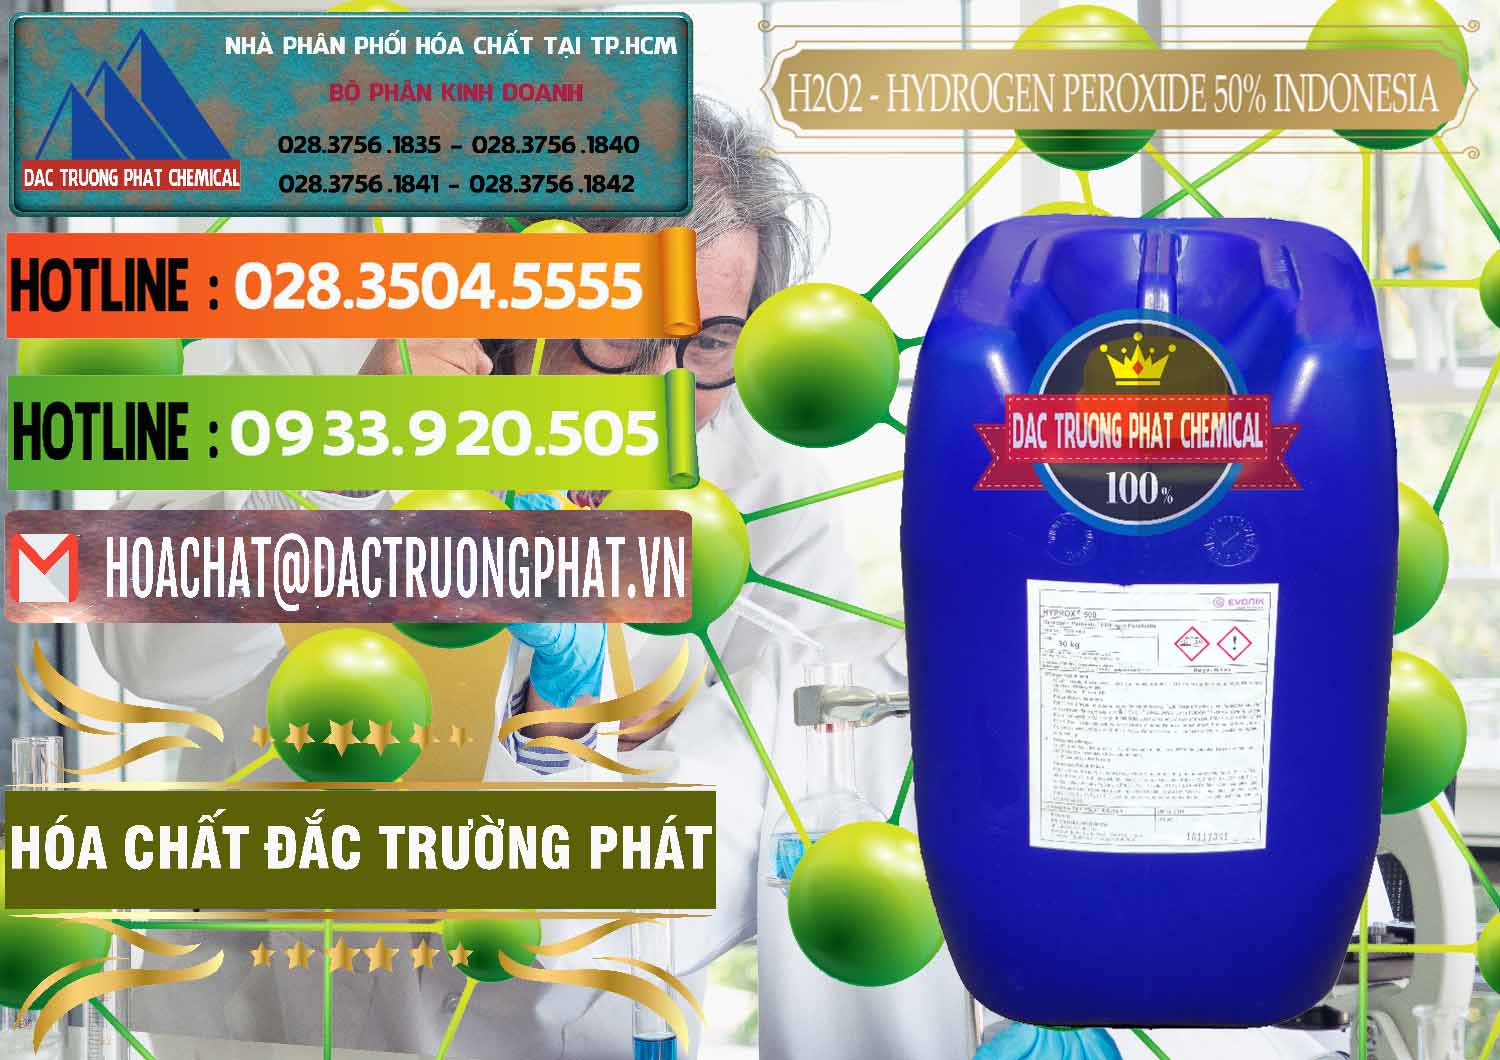 Chuyên cung ứng _ bán H2O2 - Hydrogen Peroxide 50% Evonik Indonesia - 0070 - Bán và phân phối hóa chất tại TP.HCM - cungcaphoachat.com.vn